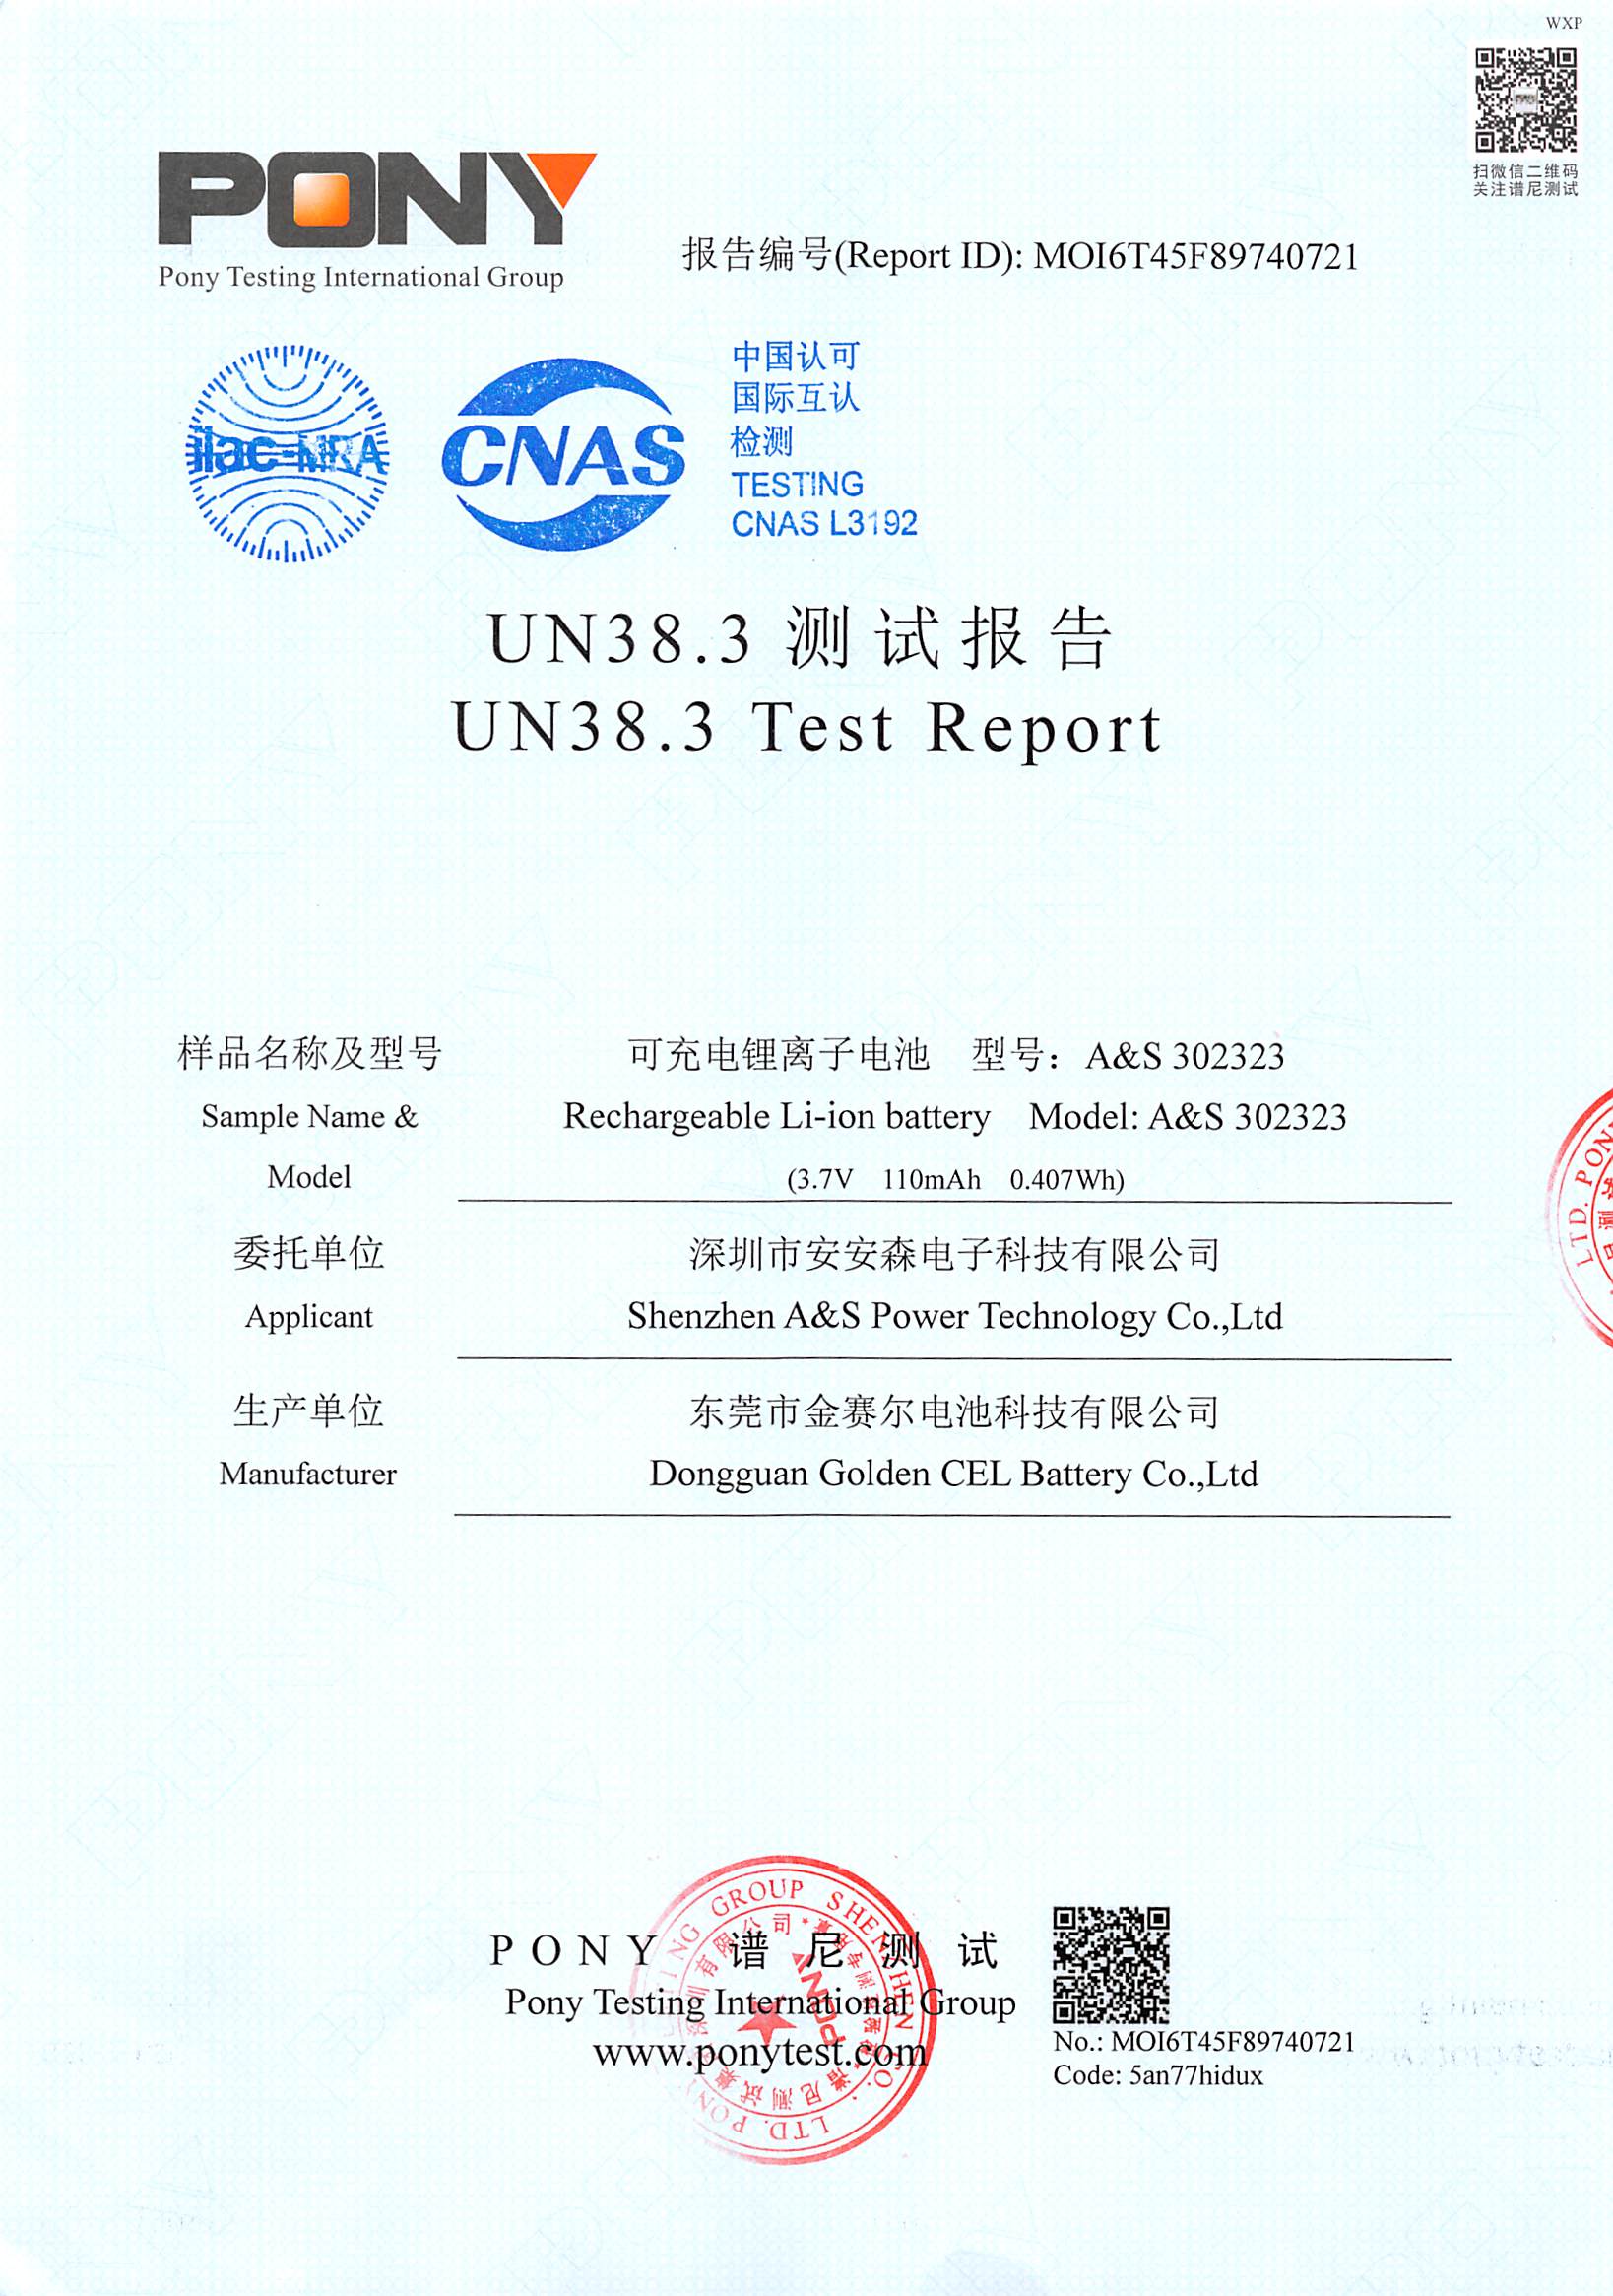 A&S Power 302323-3.7V-110mAh UN38.3 Test Report 